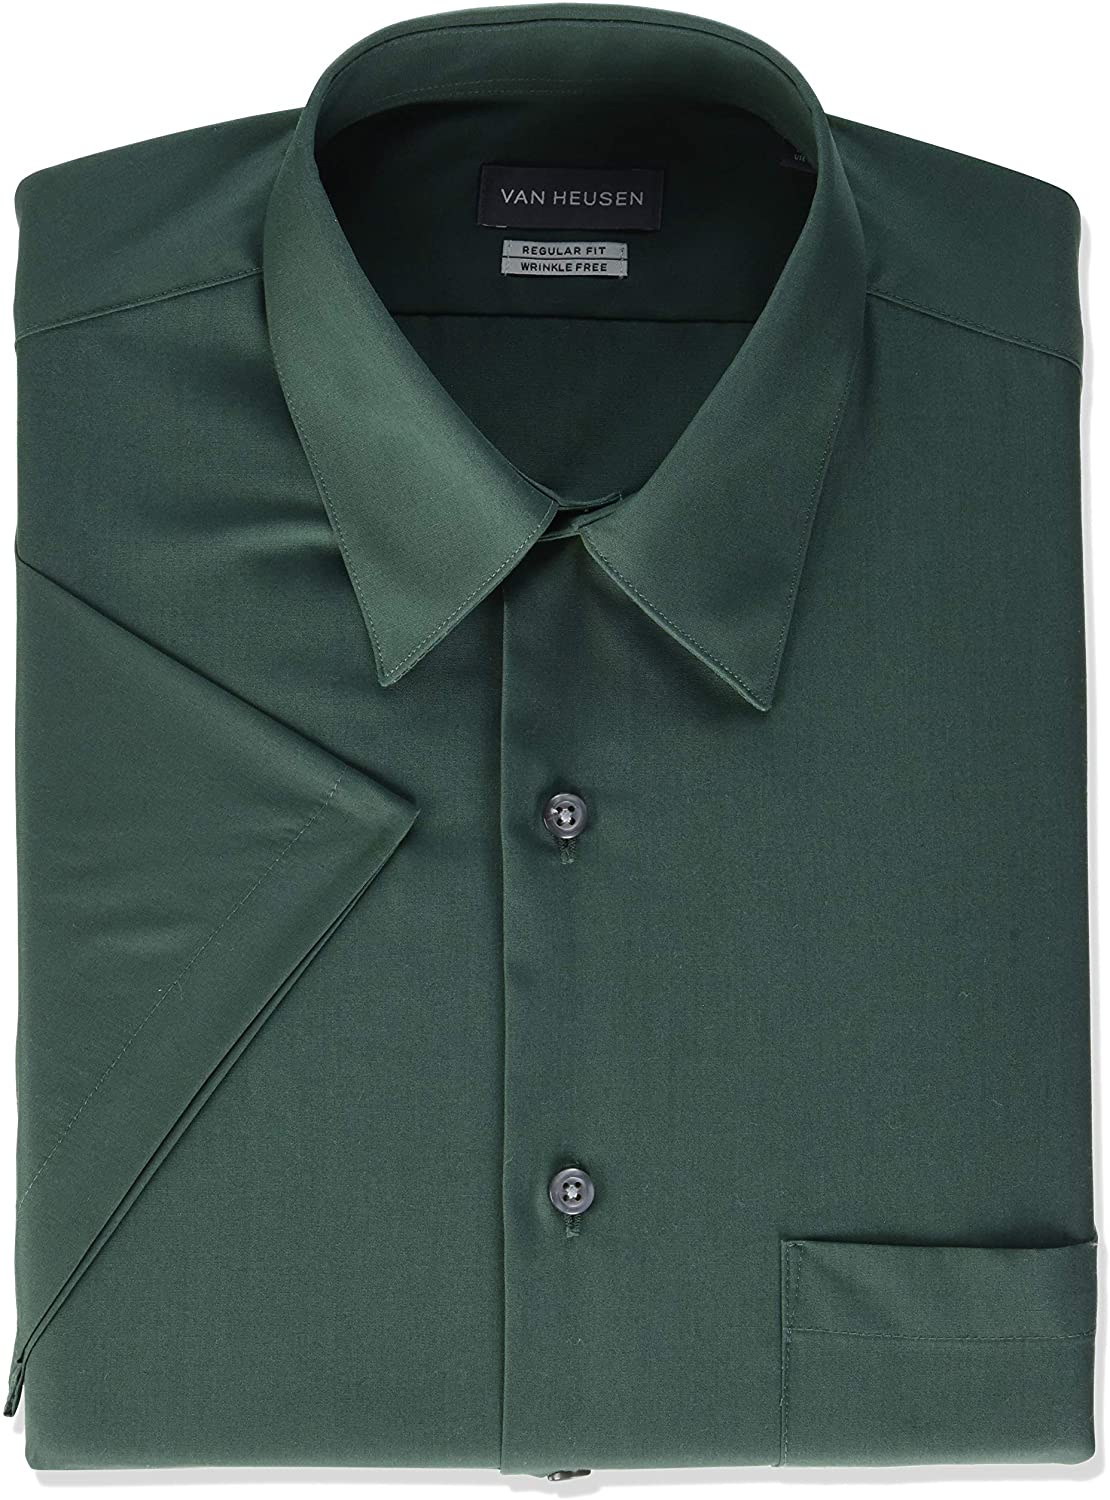 Van Heusen Men's Short Sleeve Dress Shirt Regular Fit Poplin Solid 